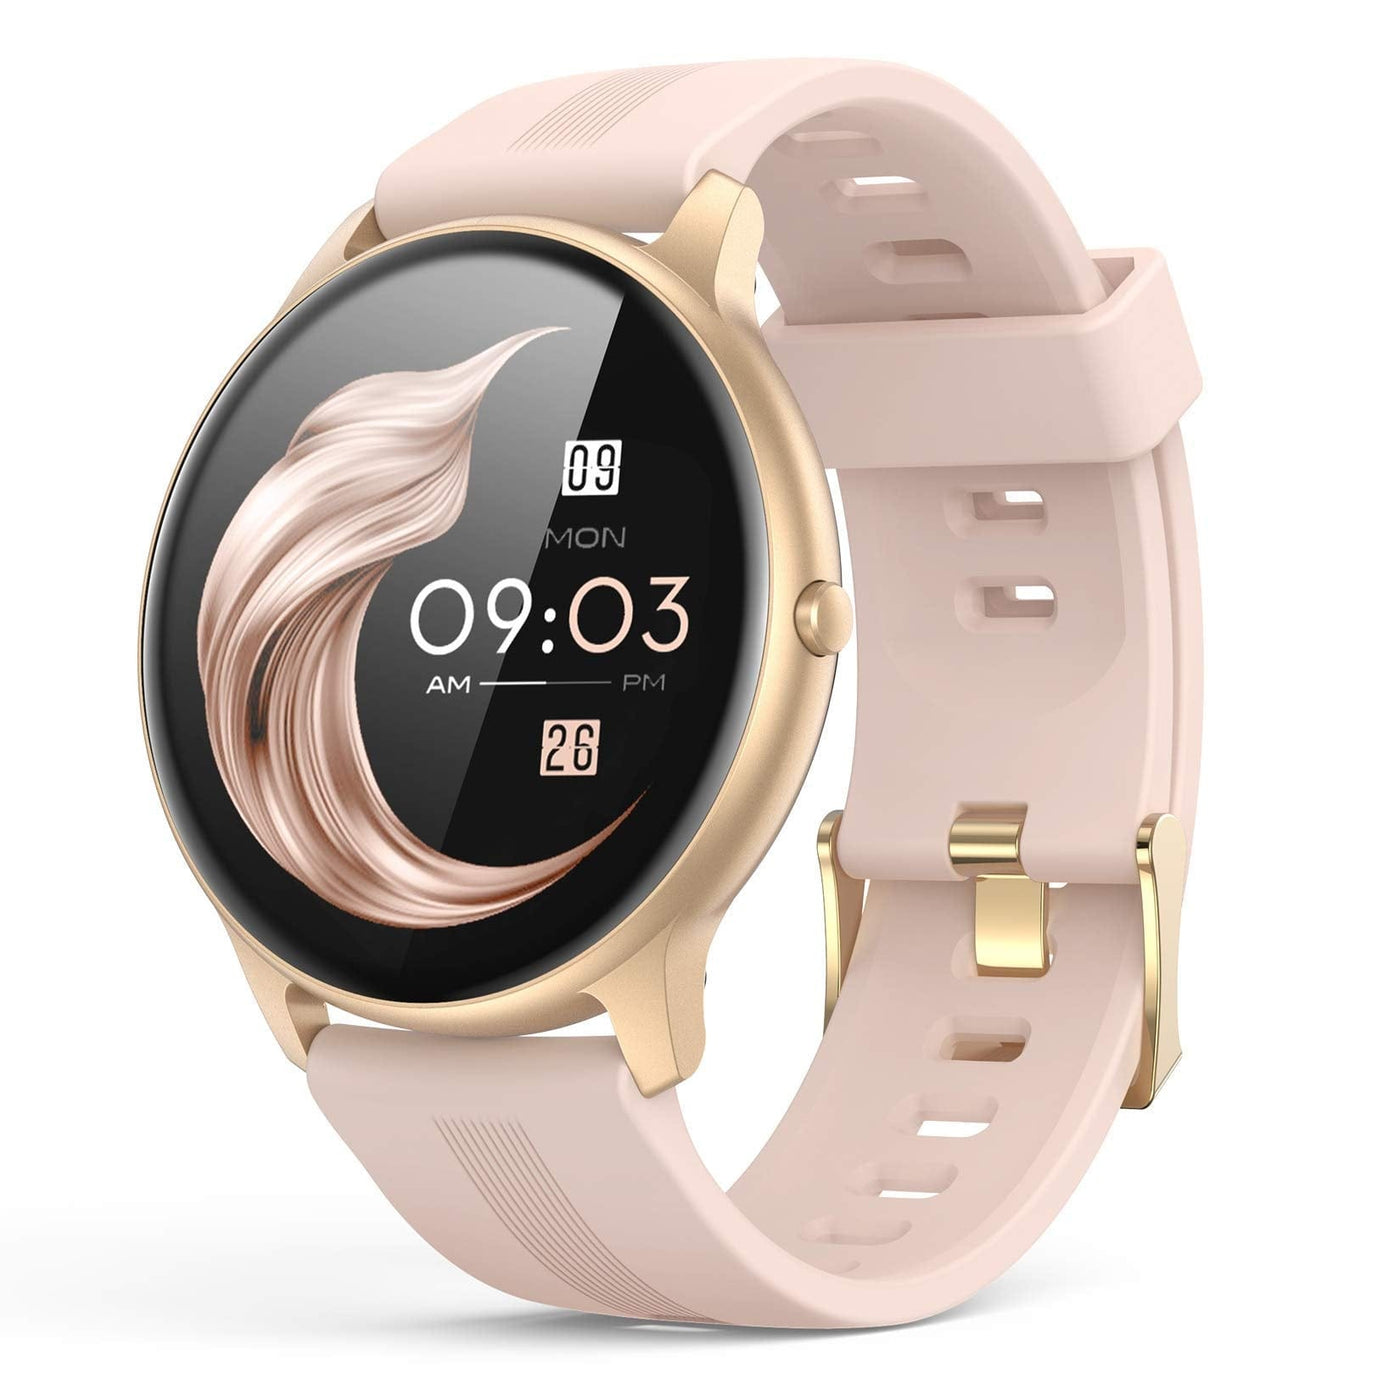 AGPTEK Smart Watch for Women - Smart Tech Shopping